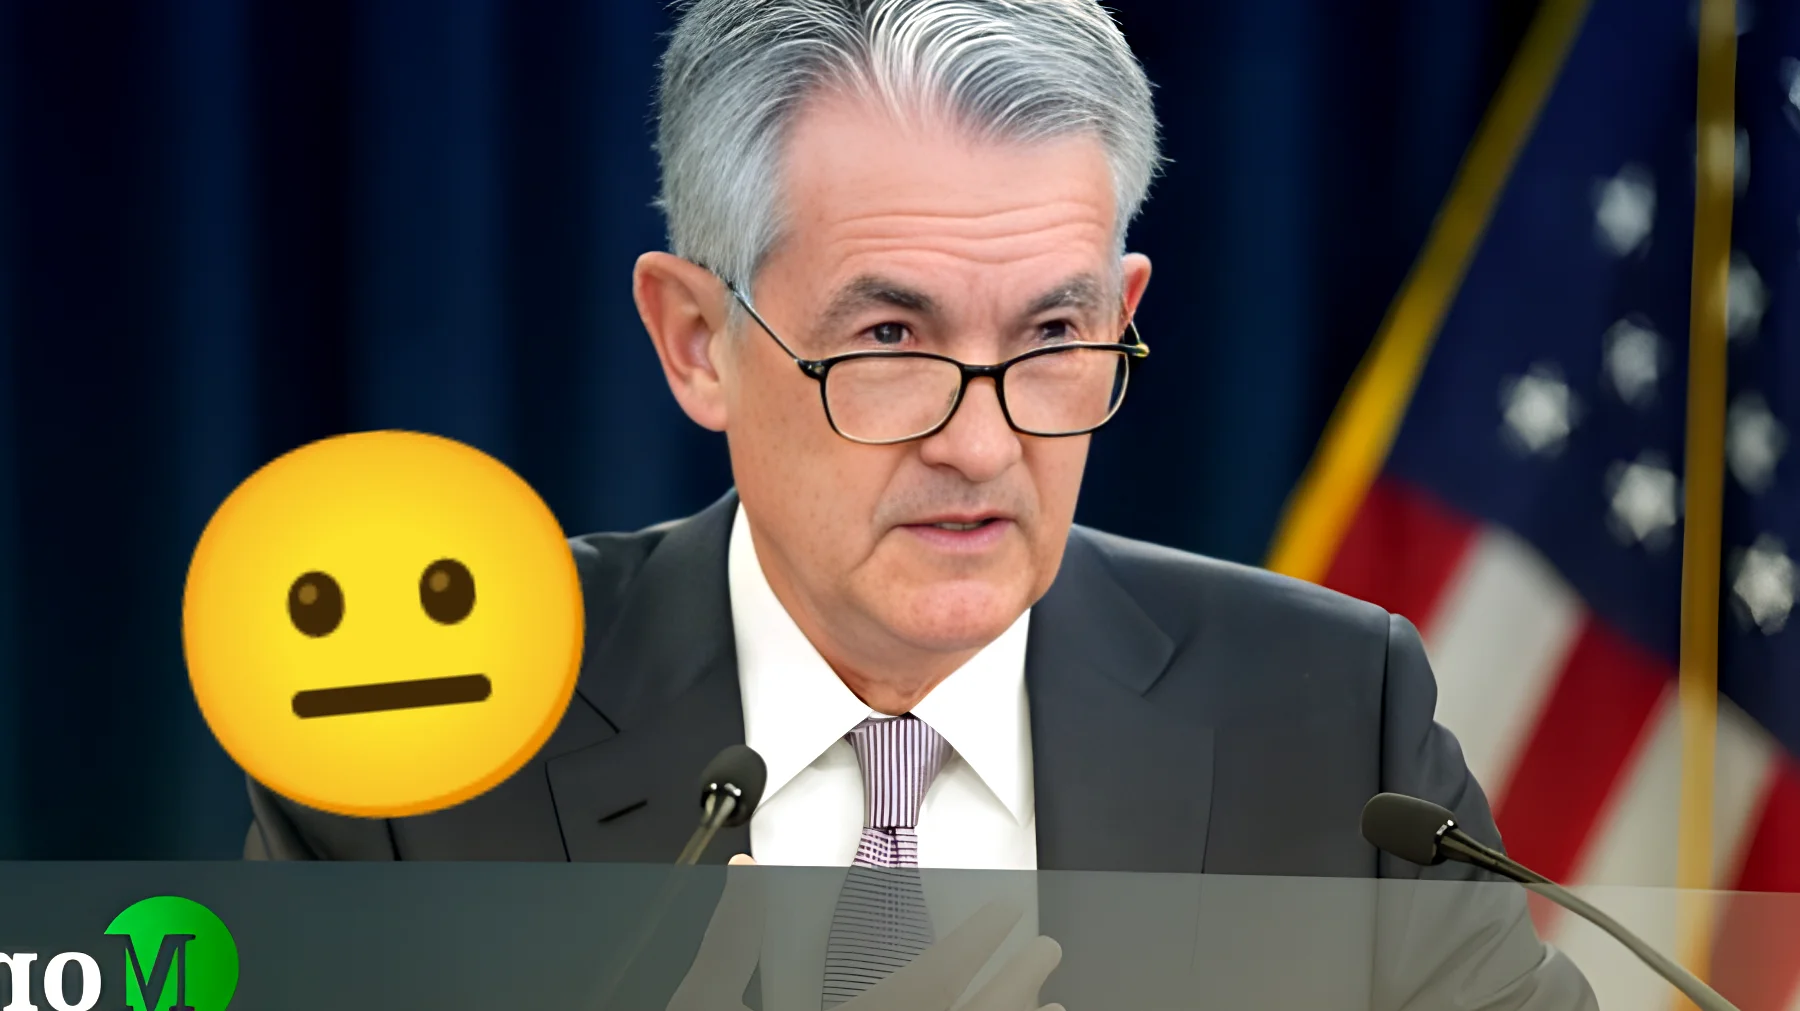 La Fed manda un segnale inequivocabile ai mercati: "I tassi restano alti, ecco perché"